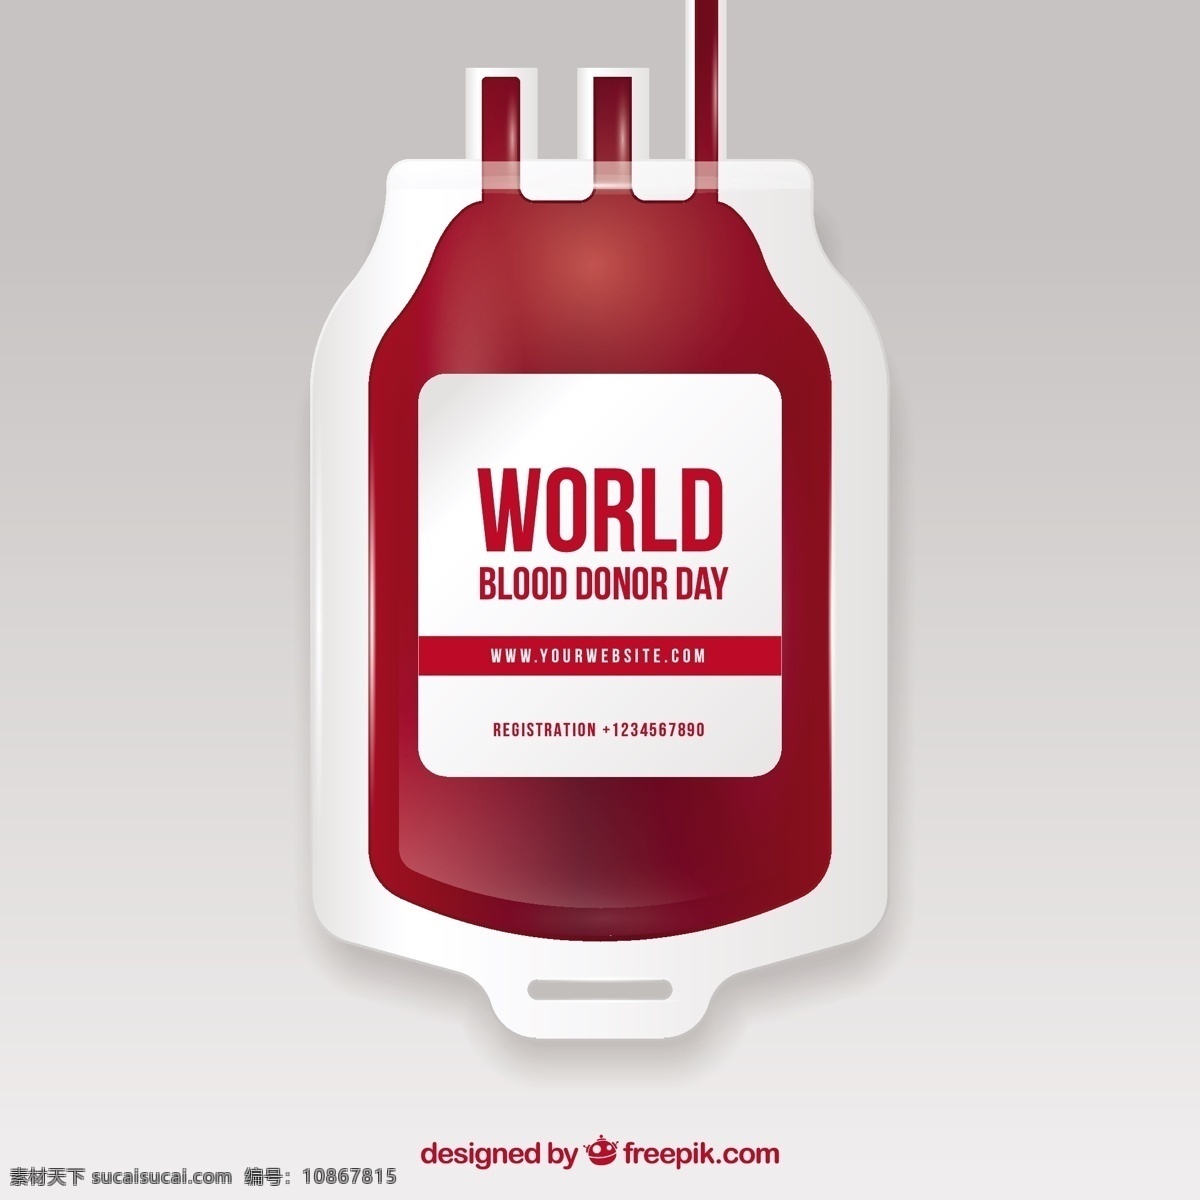 献血 日 血袋 背景 人 心脏 医疗 世界 健康 医院 包 医学 血液 慈善 下降 帮助 实验室 生活 护理 紧急情况 捐赠